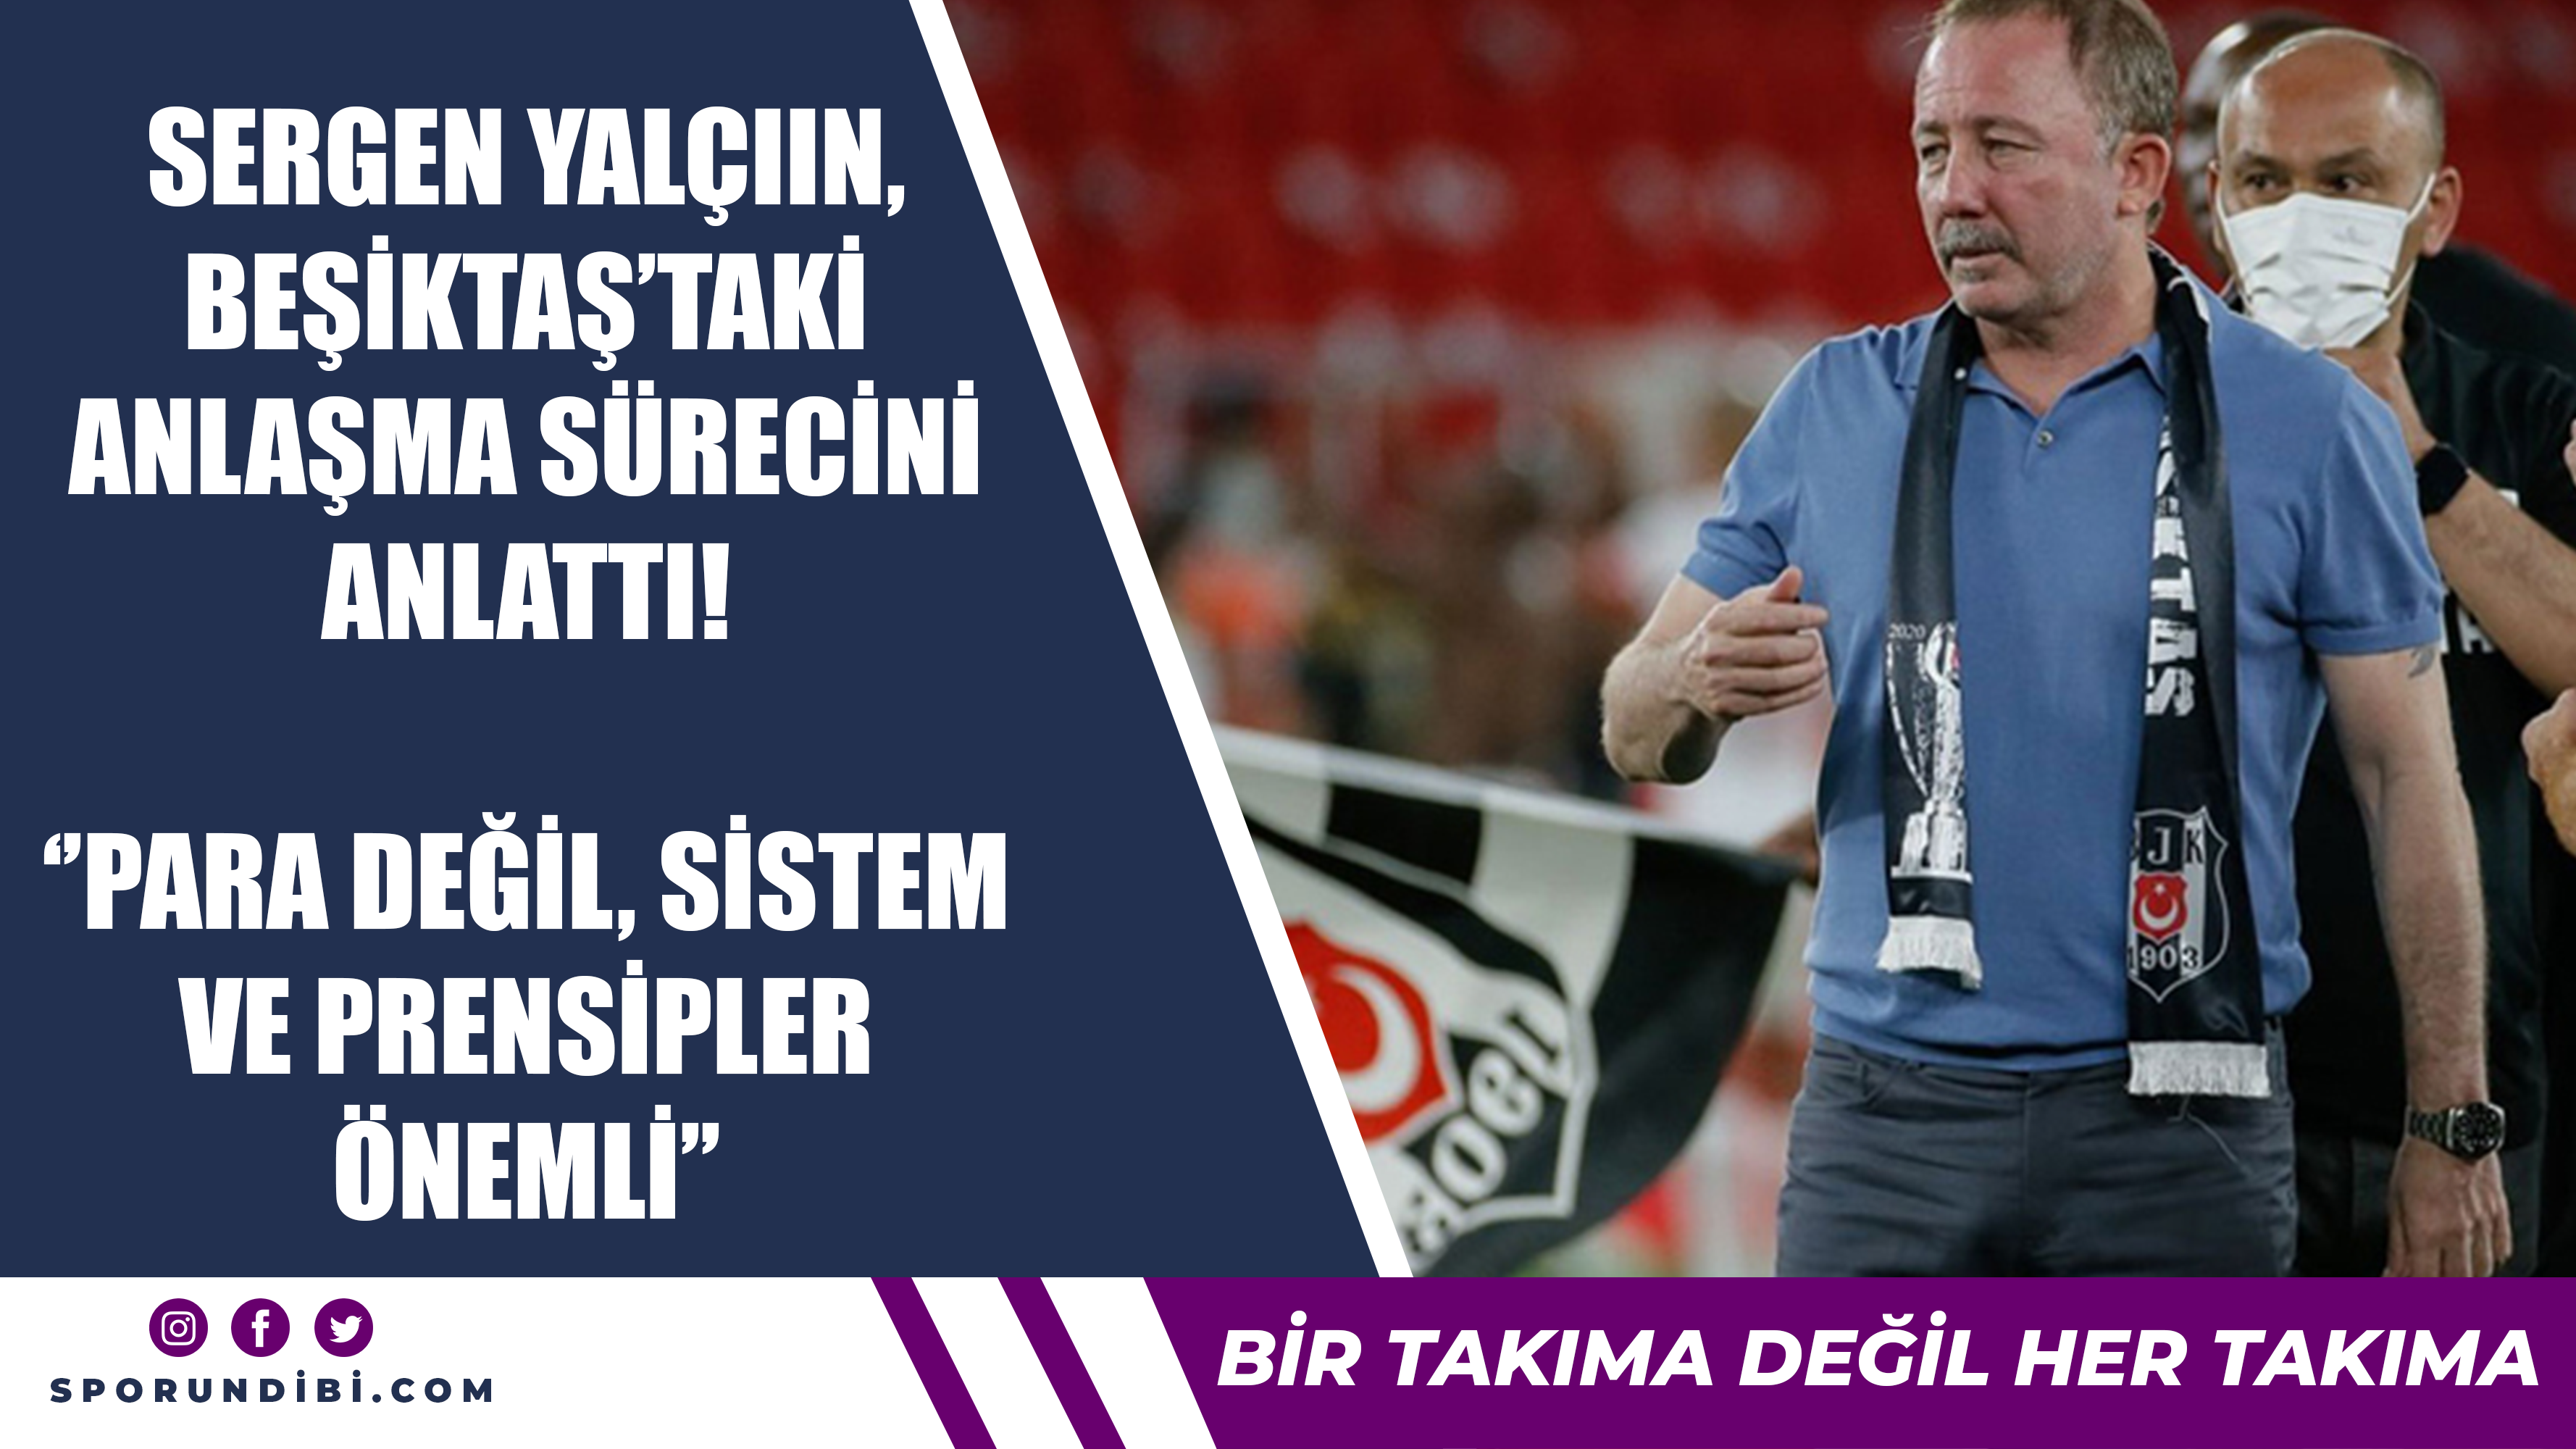 Sergen Yalçın, Beşiktaş'taki anlaşma sürecini anlattı!